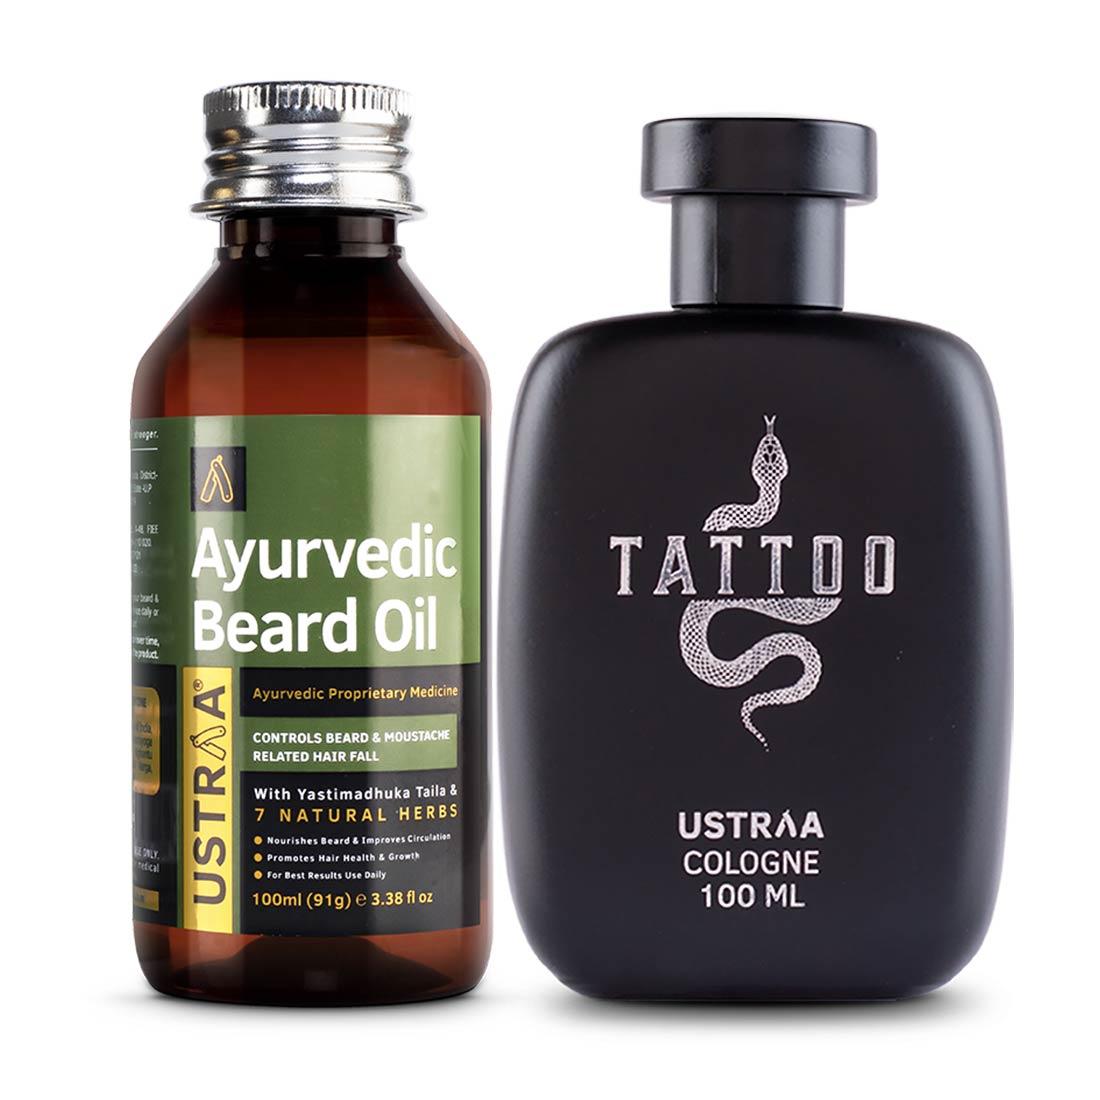 Ayurvedic Beard Oil & Tattoo Cologne - 100 ml - Perfume for Men